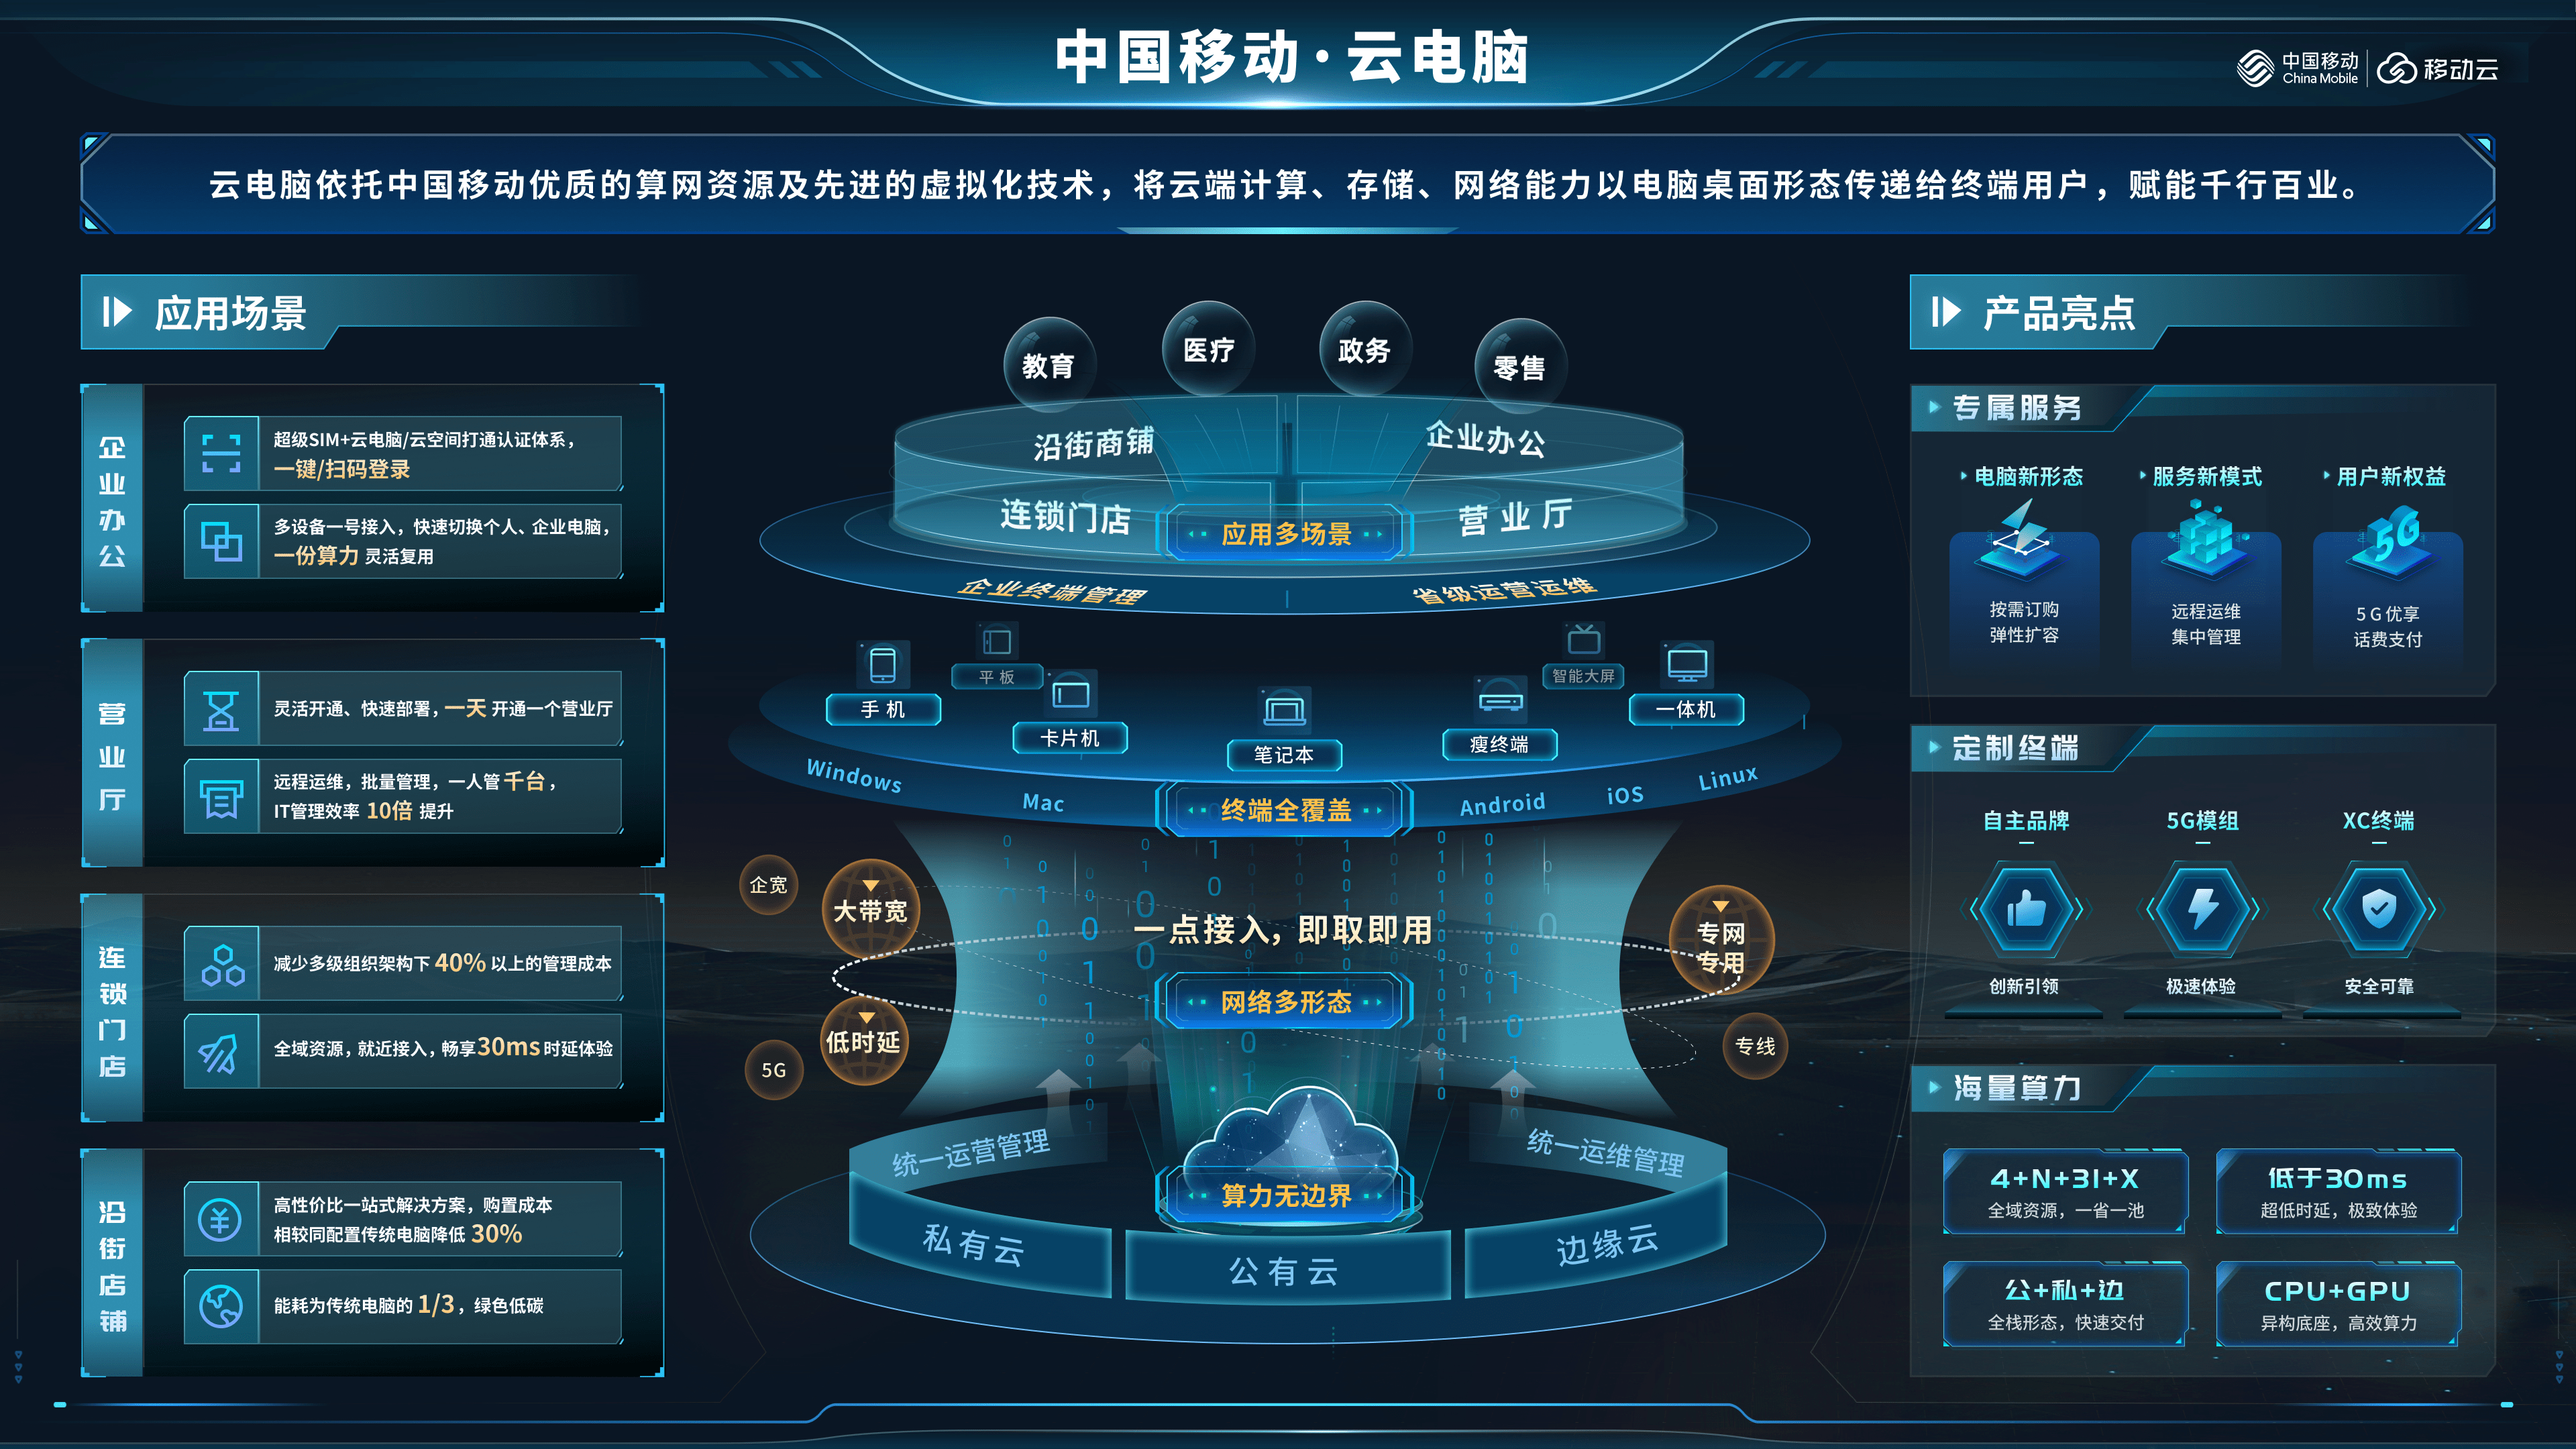 安全可靠,高效便捷,中国移动云电脑为数字化出实招